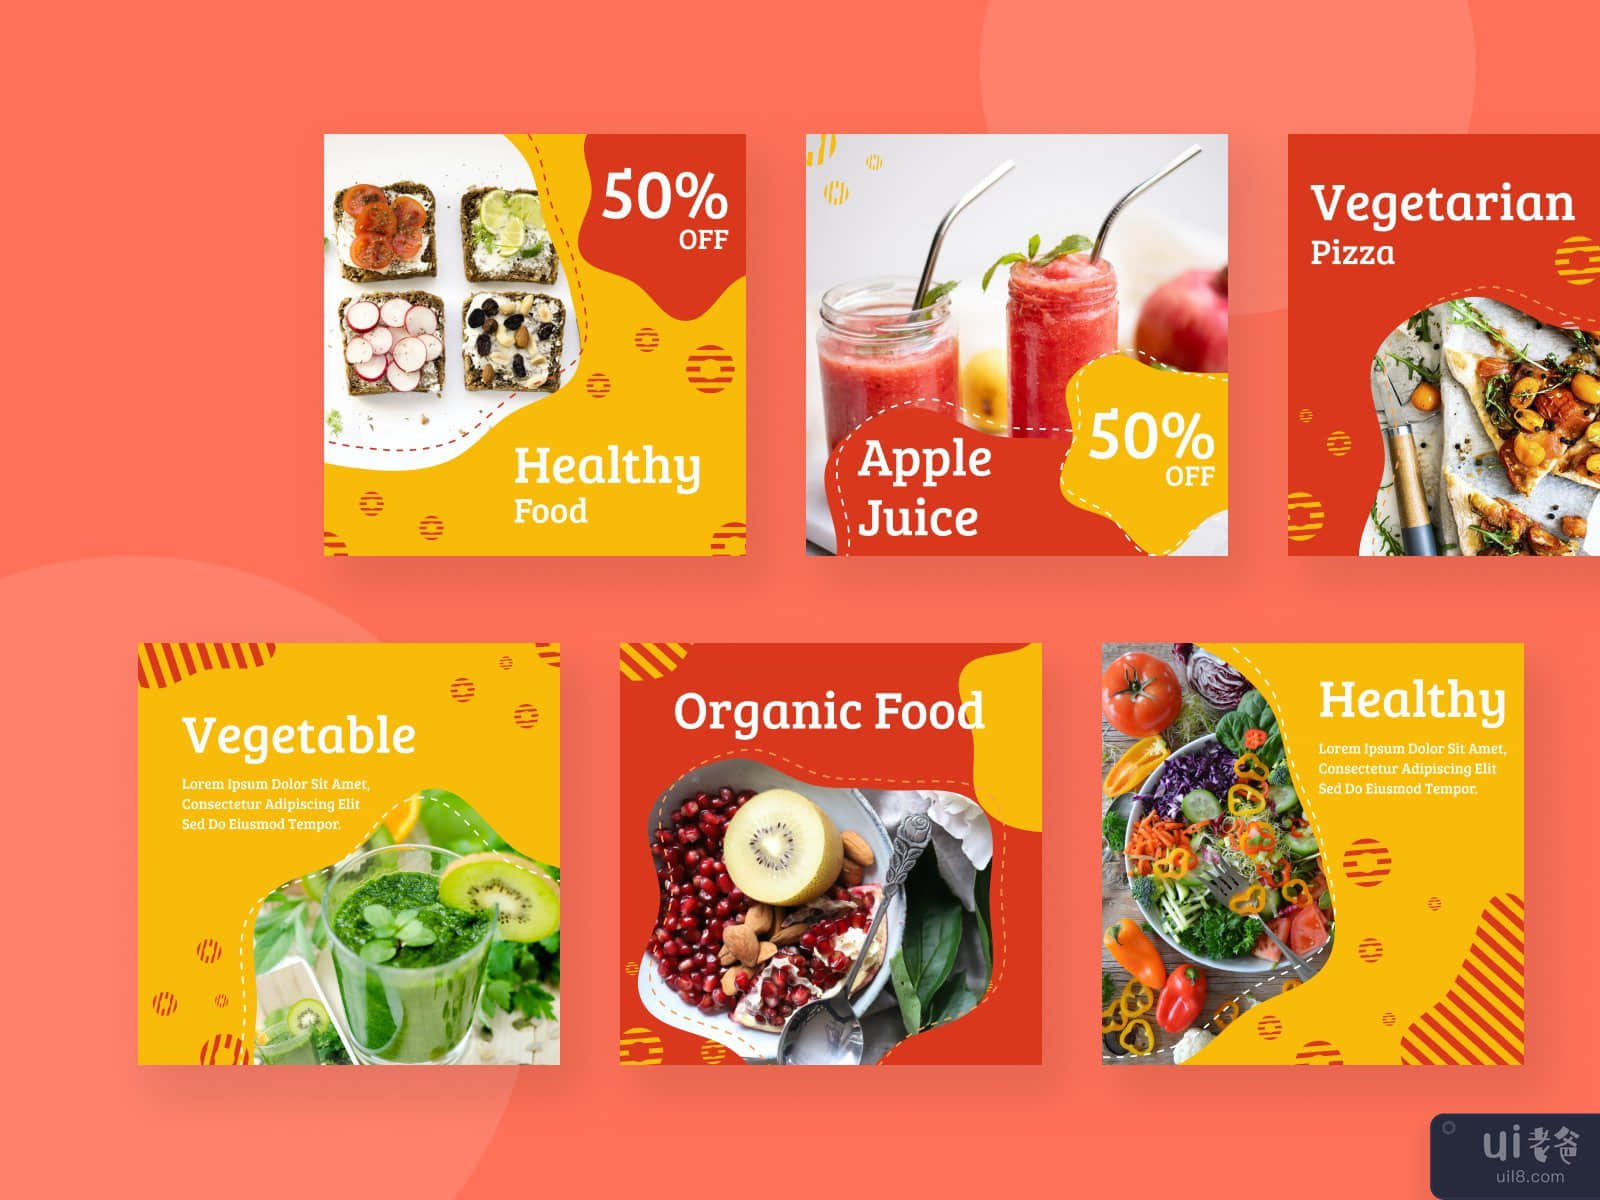 健康食品Instagram帖子(Healthy Food Instagram Post)插图